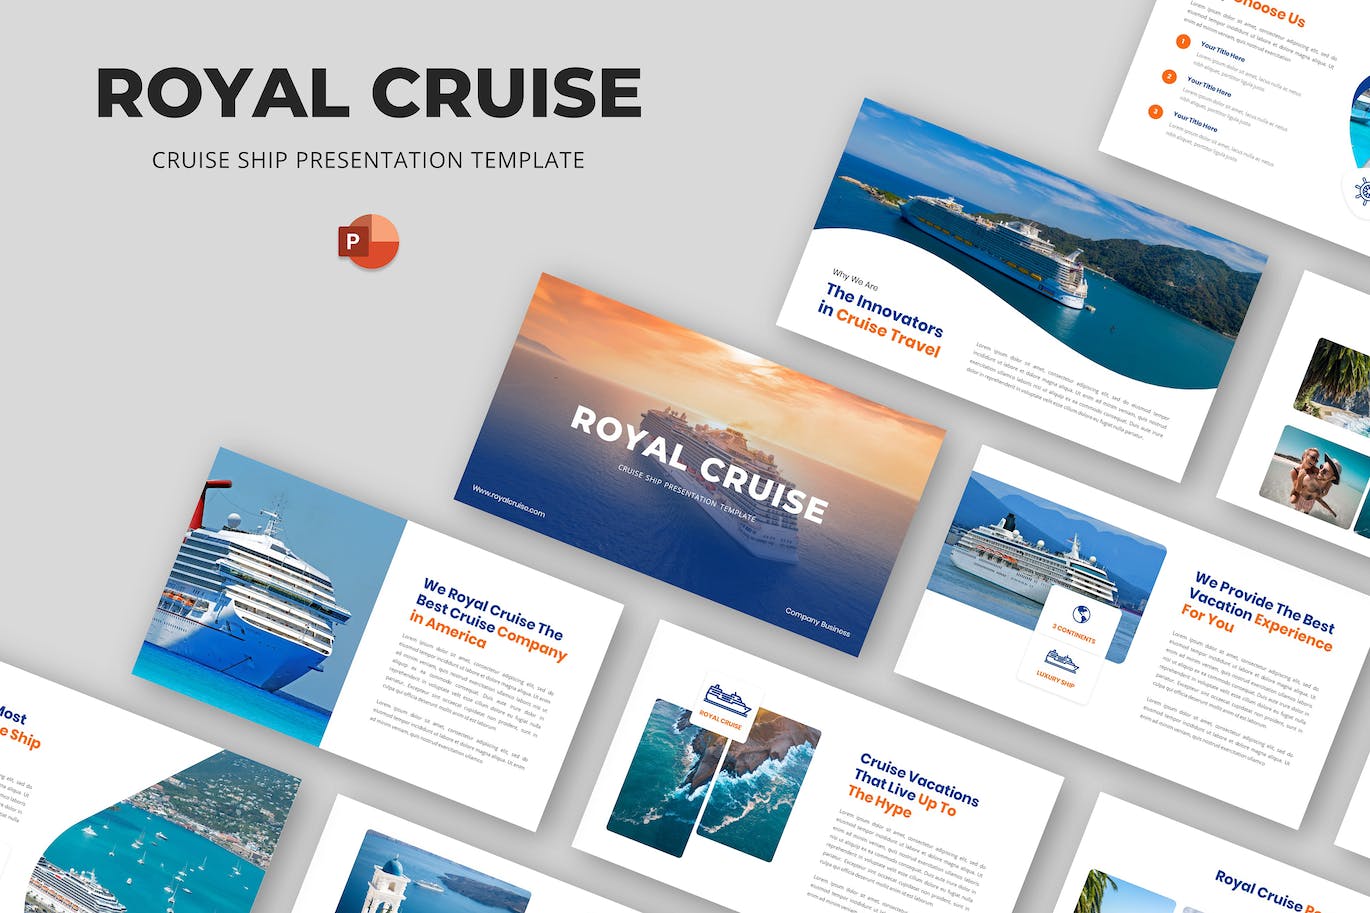 游轮航海旅行PPT模板 Royal Cruise – Cruise Ship Powerpoint Template 幻灯图表 第1张